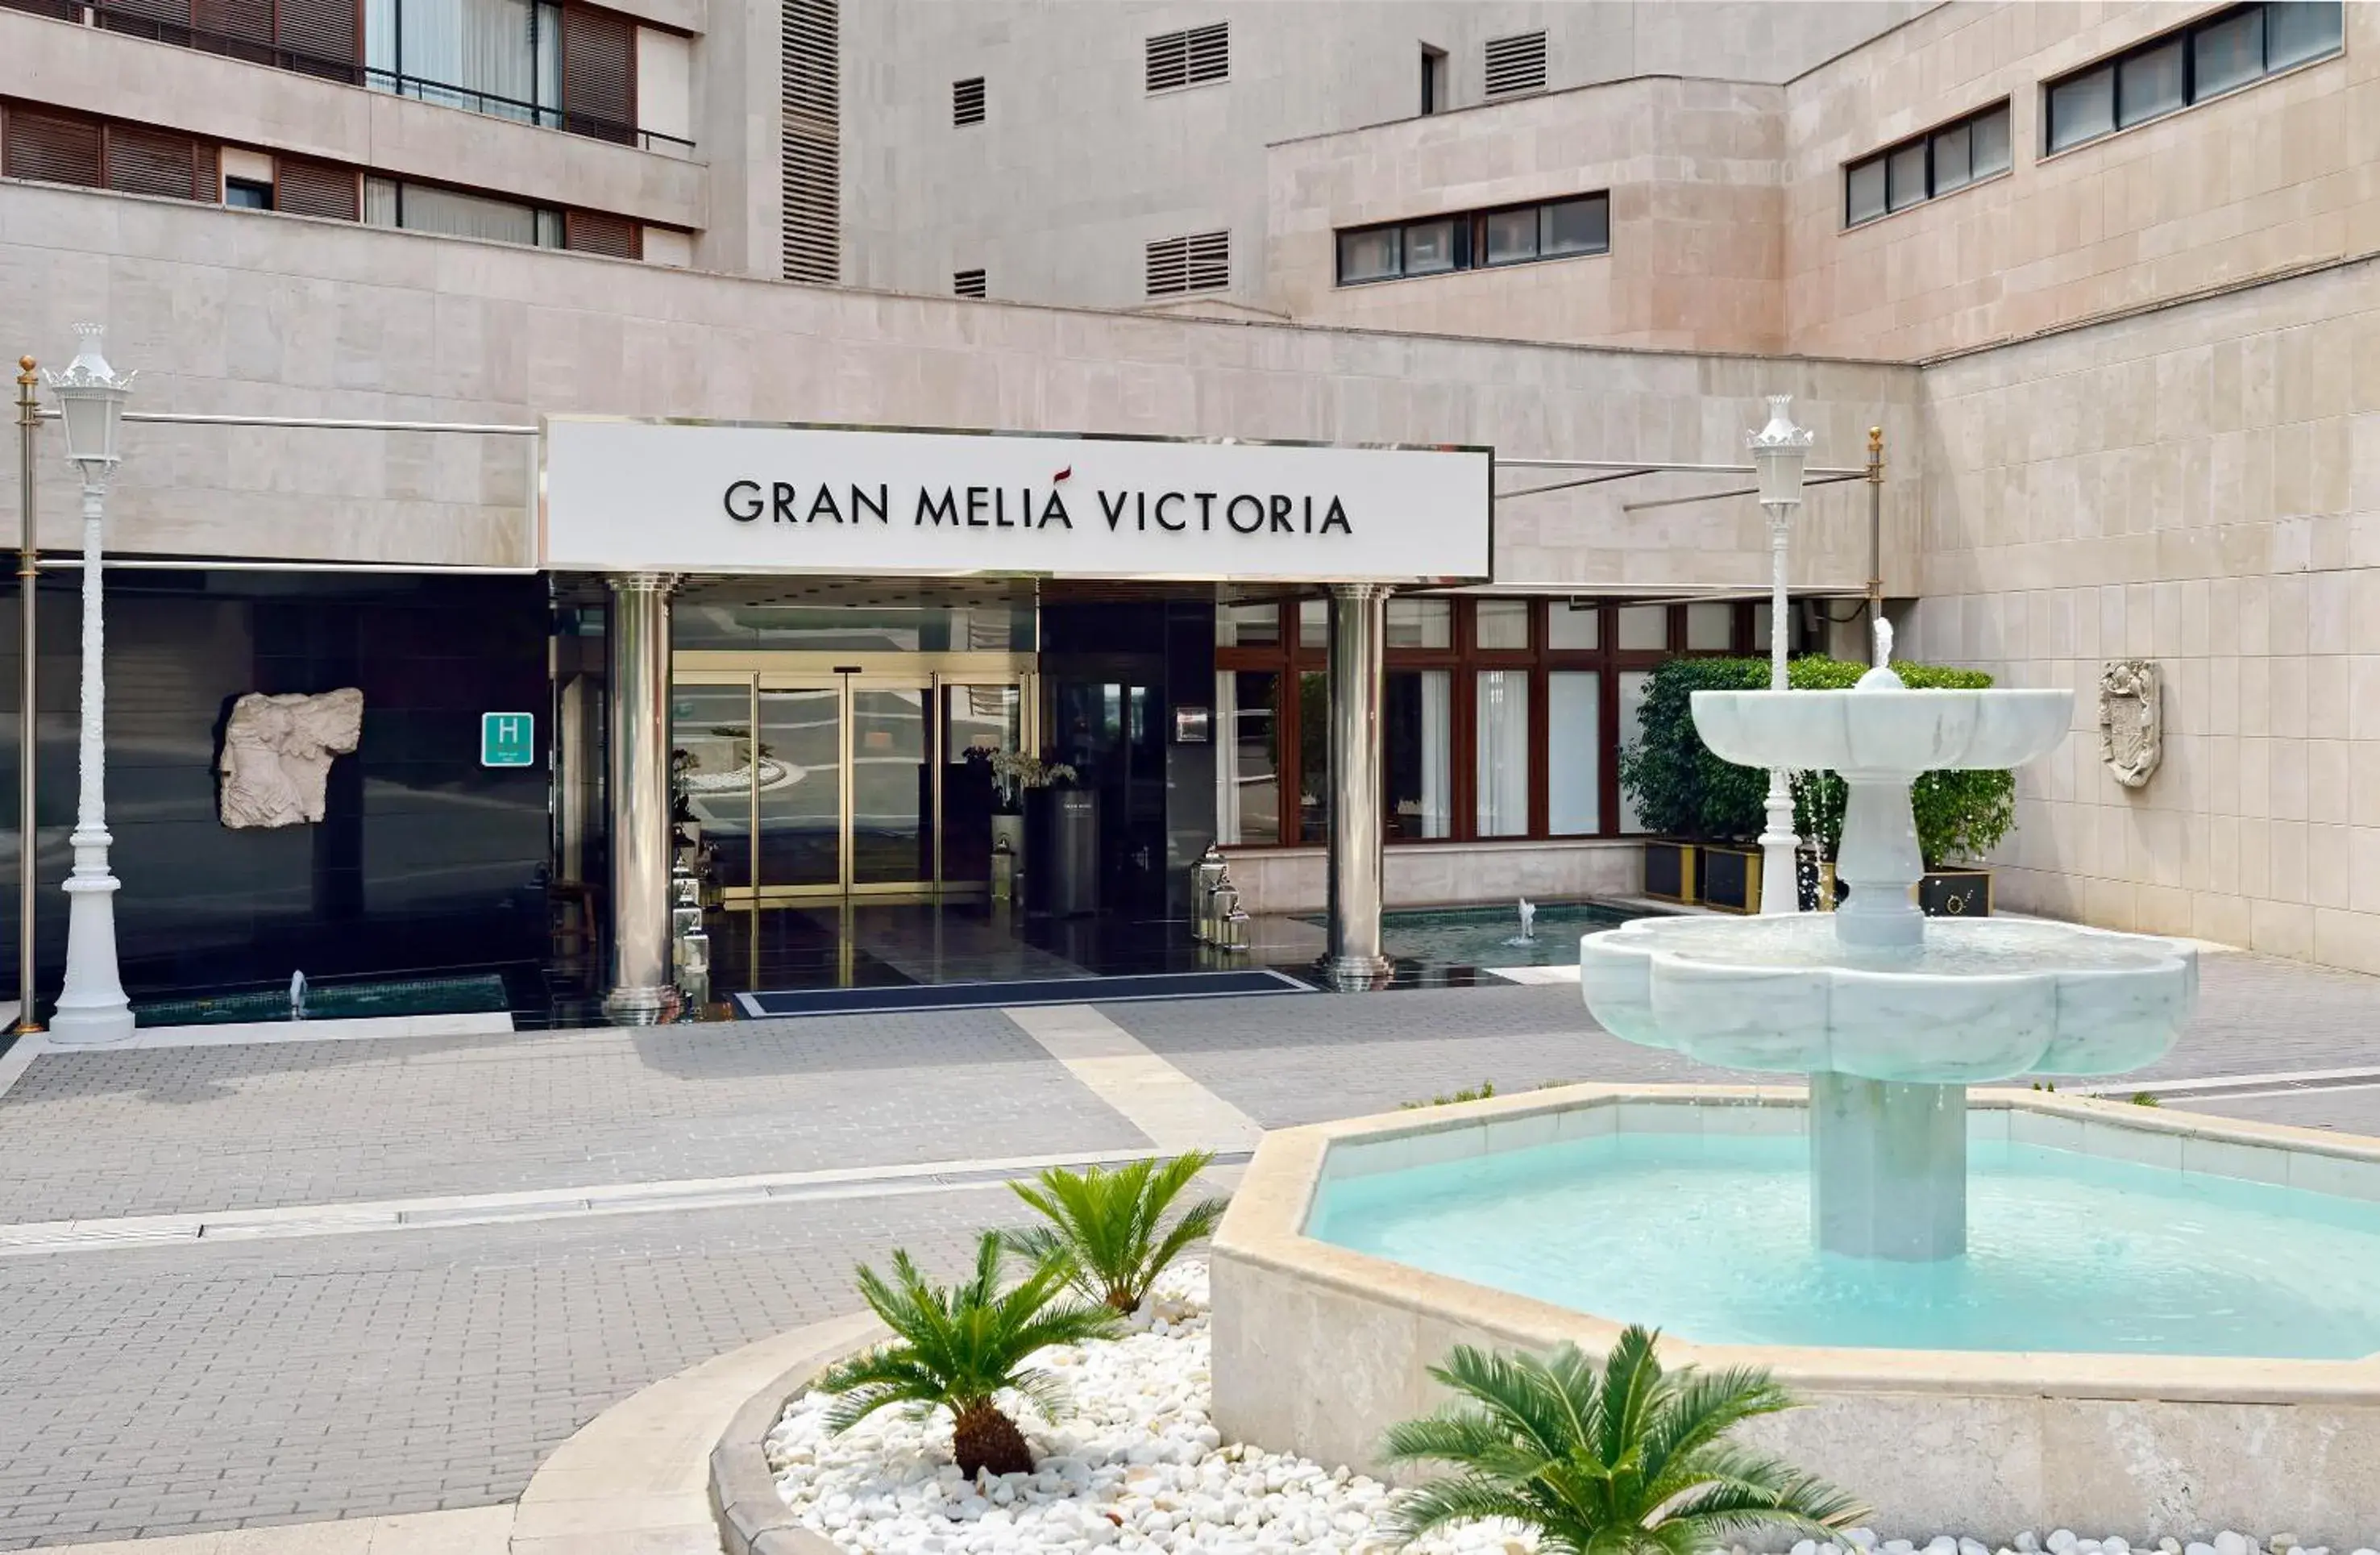 Facade/entrance in Hotel Victoria Gran Meliá